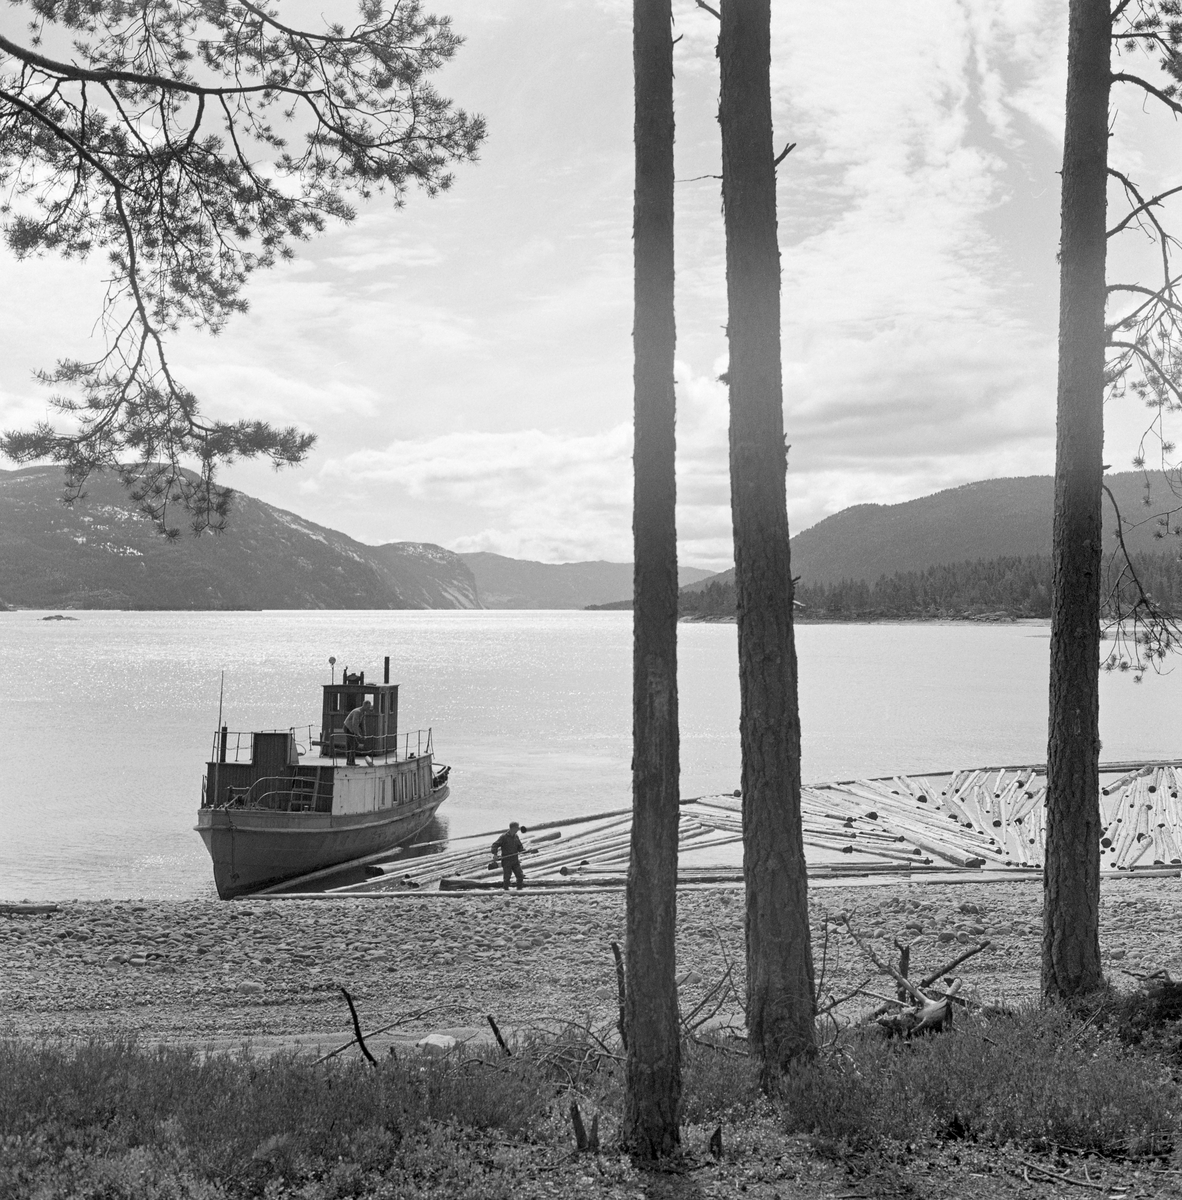 Slepebåt og tømmer på innsjø. Tømmersleping med slepebåten M/S Teisner på Fyresvatnet, Fyresdal, Telemark. Skipper Gunnar Sandvik . Båten ble bygd på Akers mekaniske verksted, og var opprinnelig en kombinert passasjer- og slepebåt fra 1876, Den fikk navnet M/S Teisner i 1913. Etterhvert ble det en ren slepebåt. Etter at tømmertransporten forsvant i 1971, ble båten tatt vare på av "Reiarlaget Teisners vener", men i 1990 ble båten dratt på land. Fyresvatn.